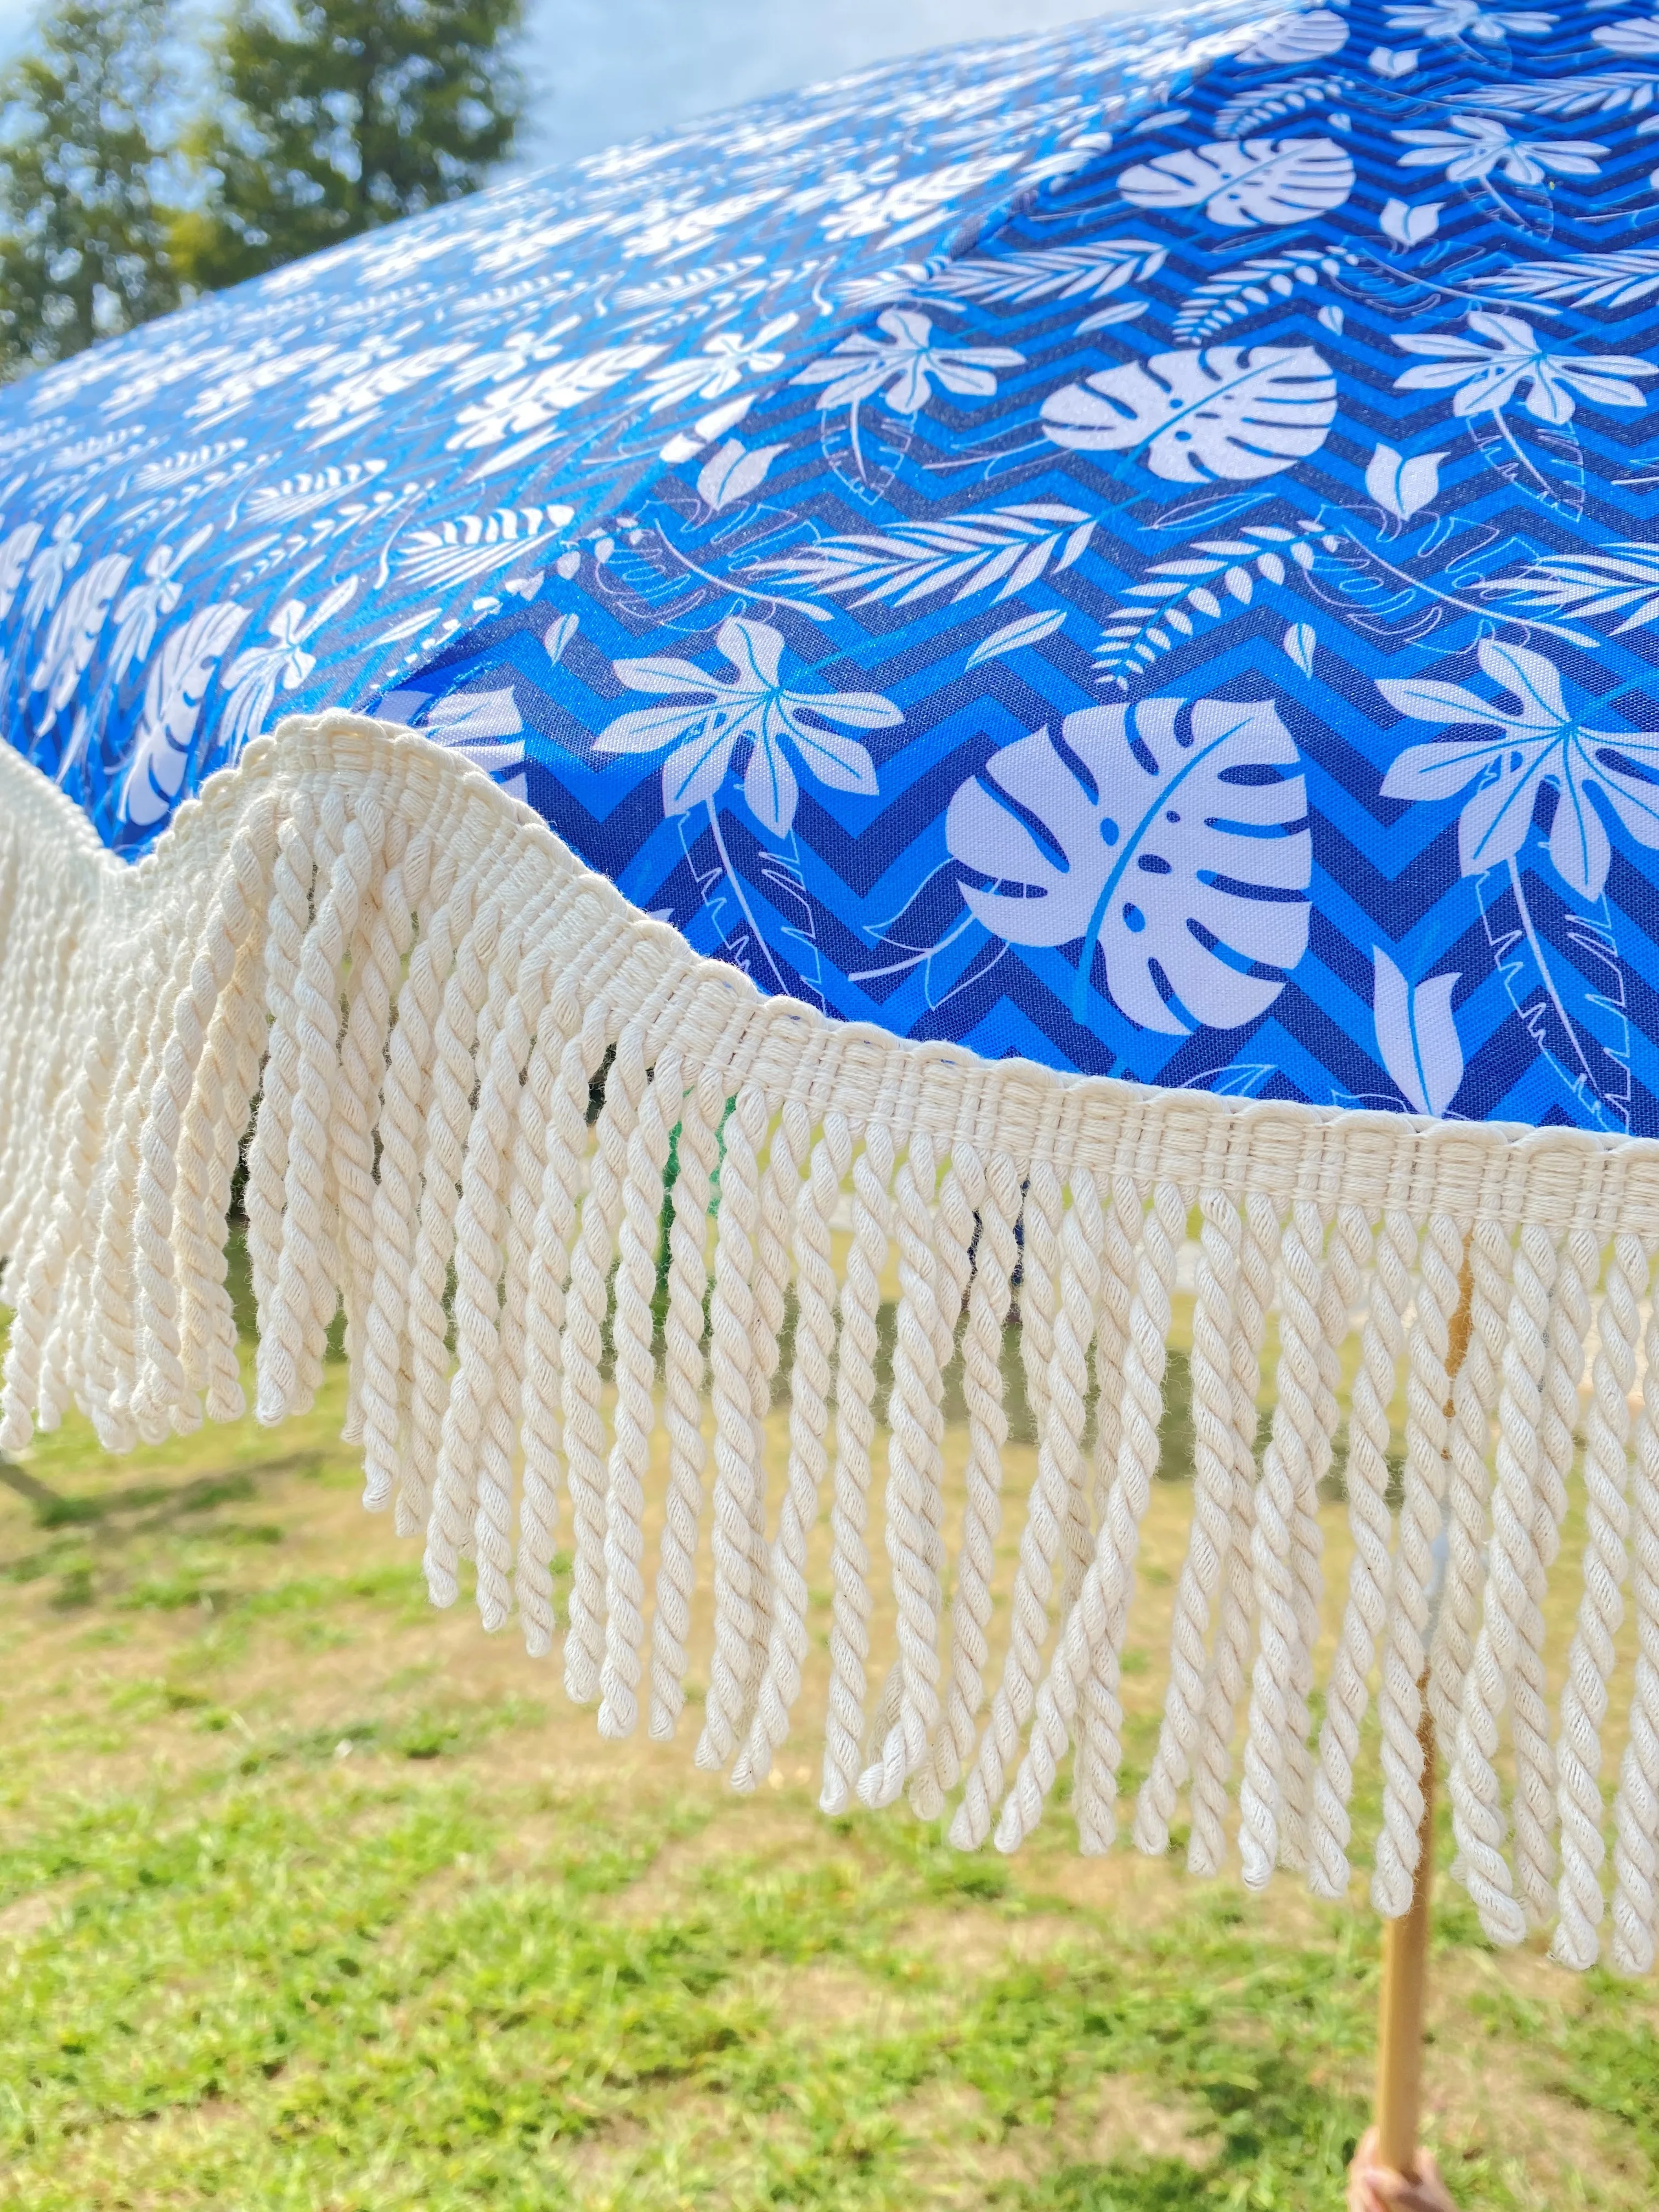 2021 высококачественные складные зонты с бахромой и роскошным логотипом, деревянные пляжные зонты с кисточками